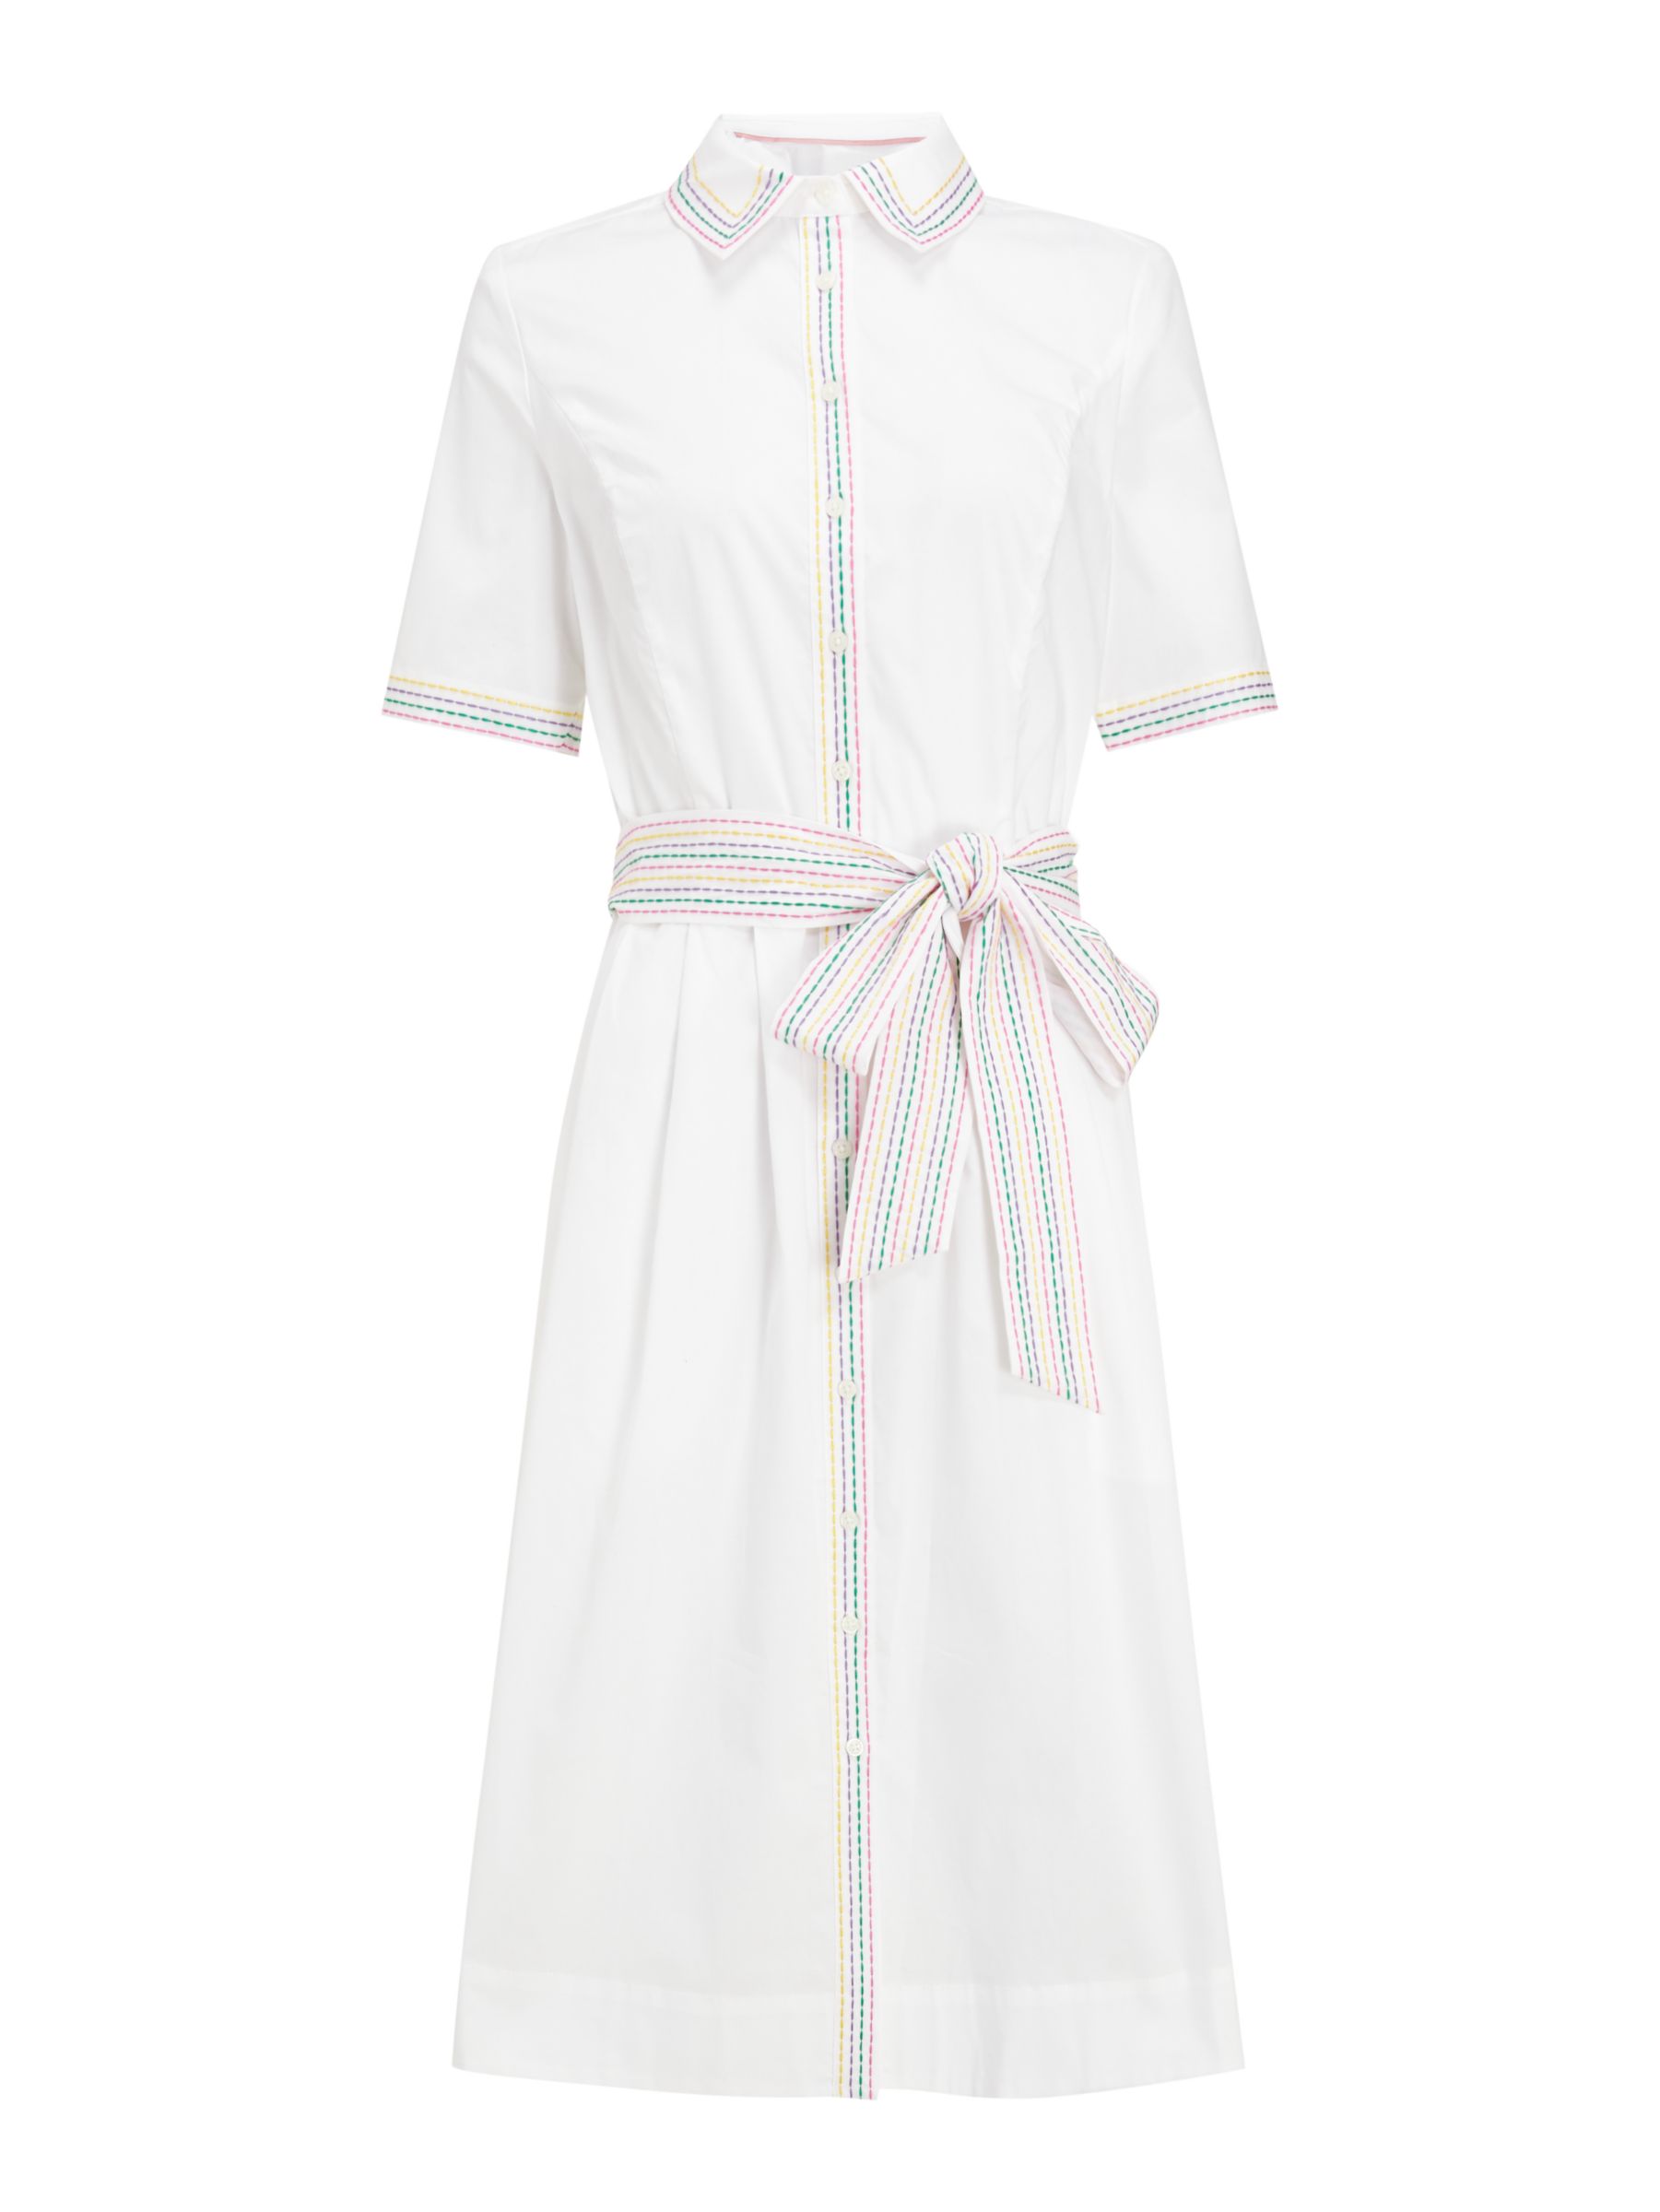 Boden Anastasia Midi Dress, White, 10